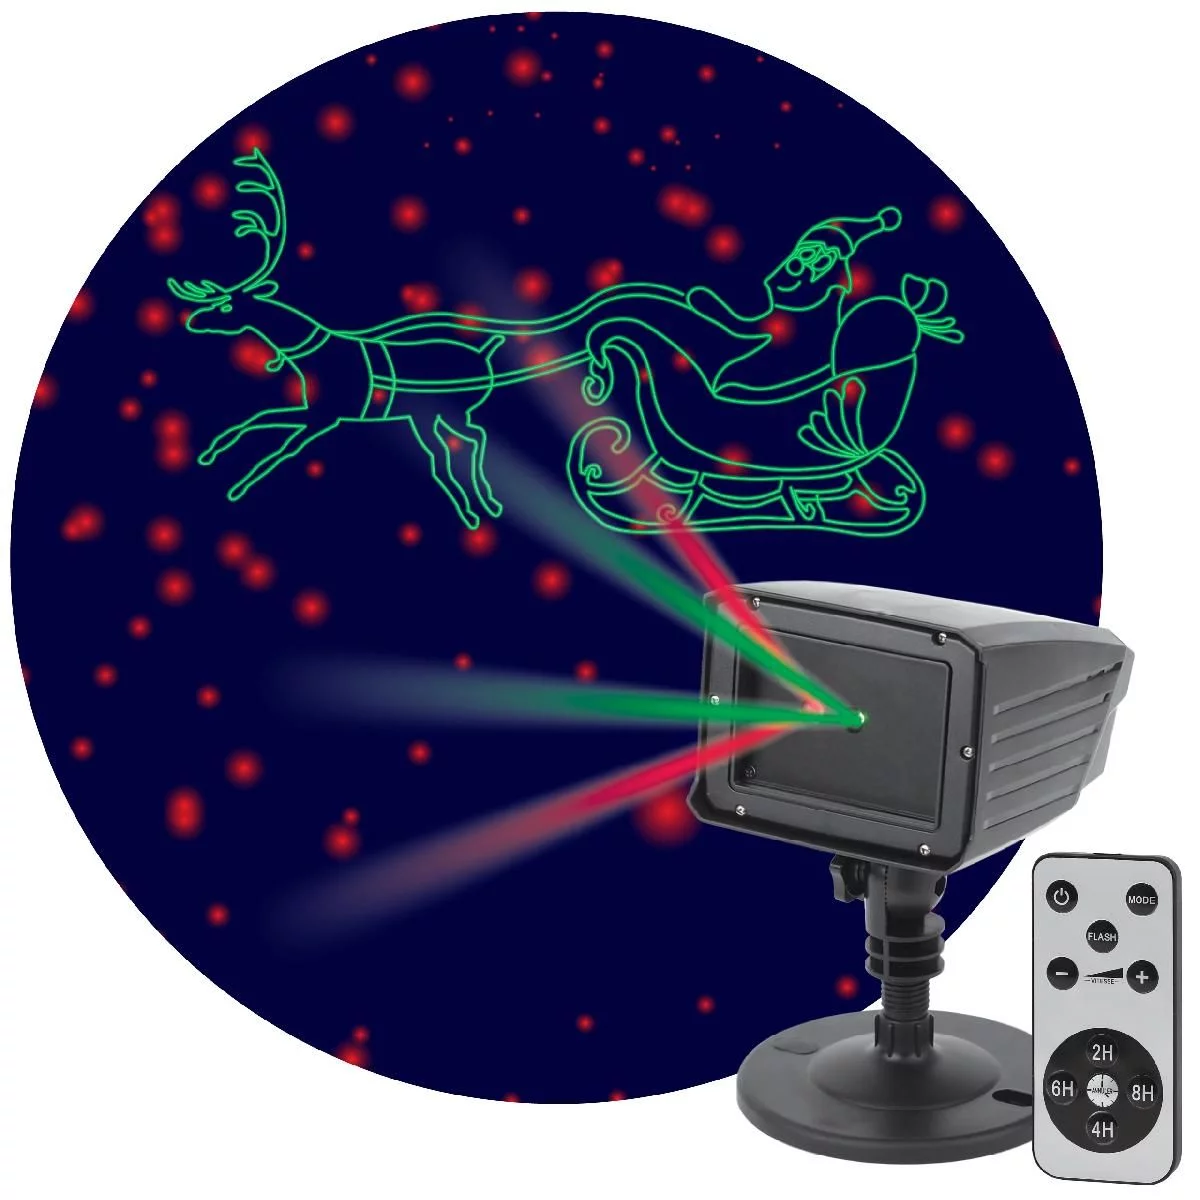 ENIOP-02 ЭРА Проектор Laser Дед Мороз мультирежим 2 цвета, 220V, IP44 (12/180)